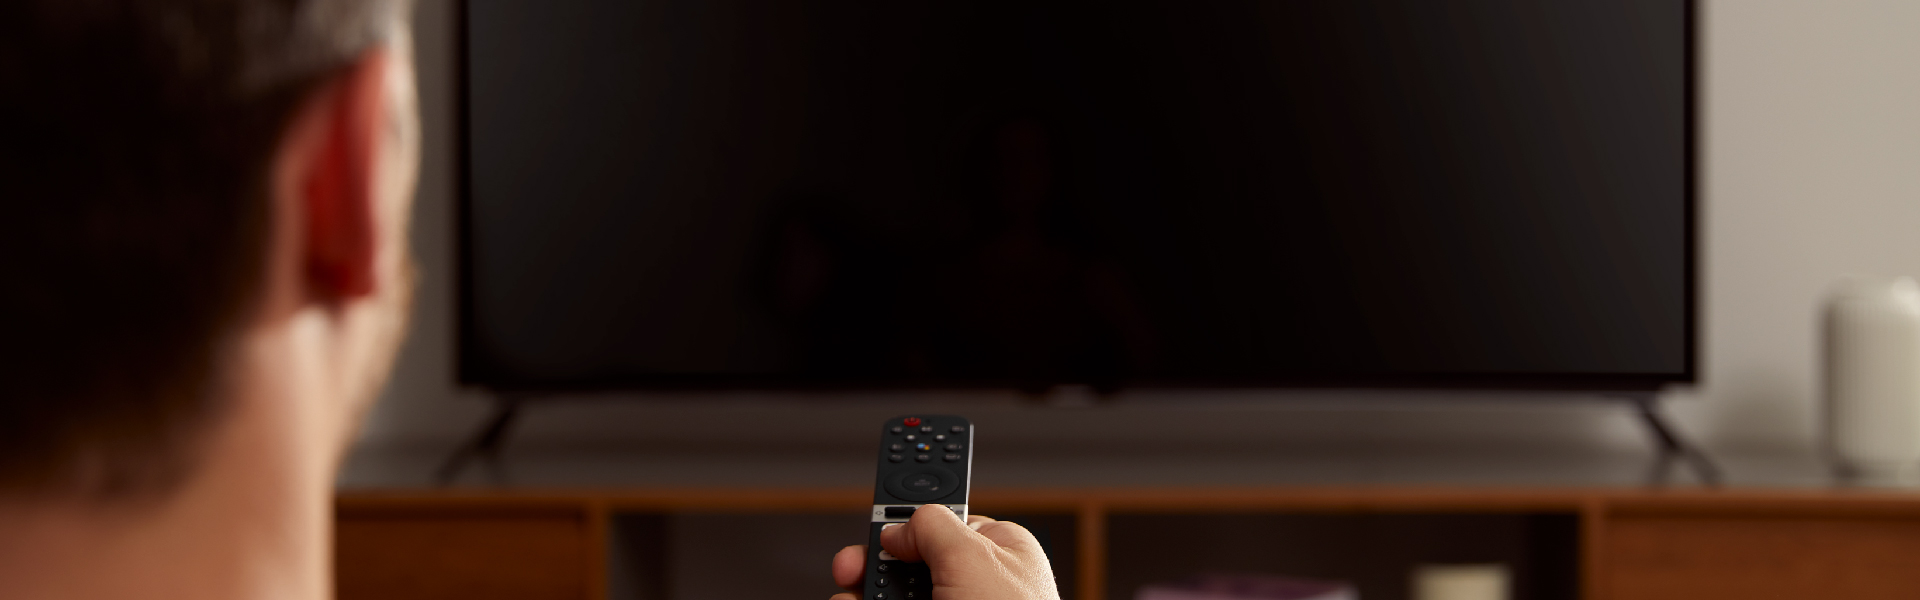 Como configurar uma smart tv com android tv